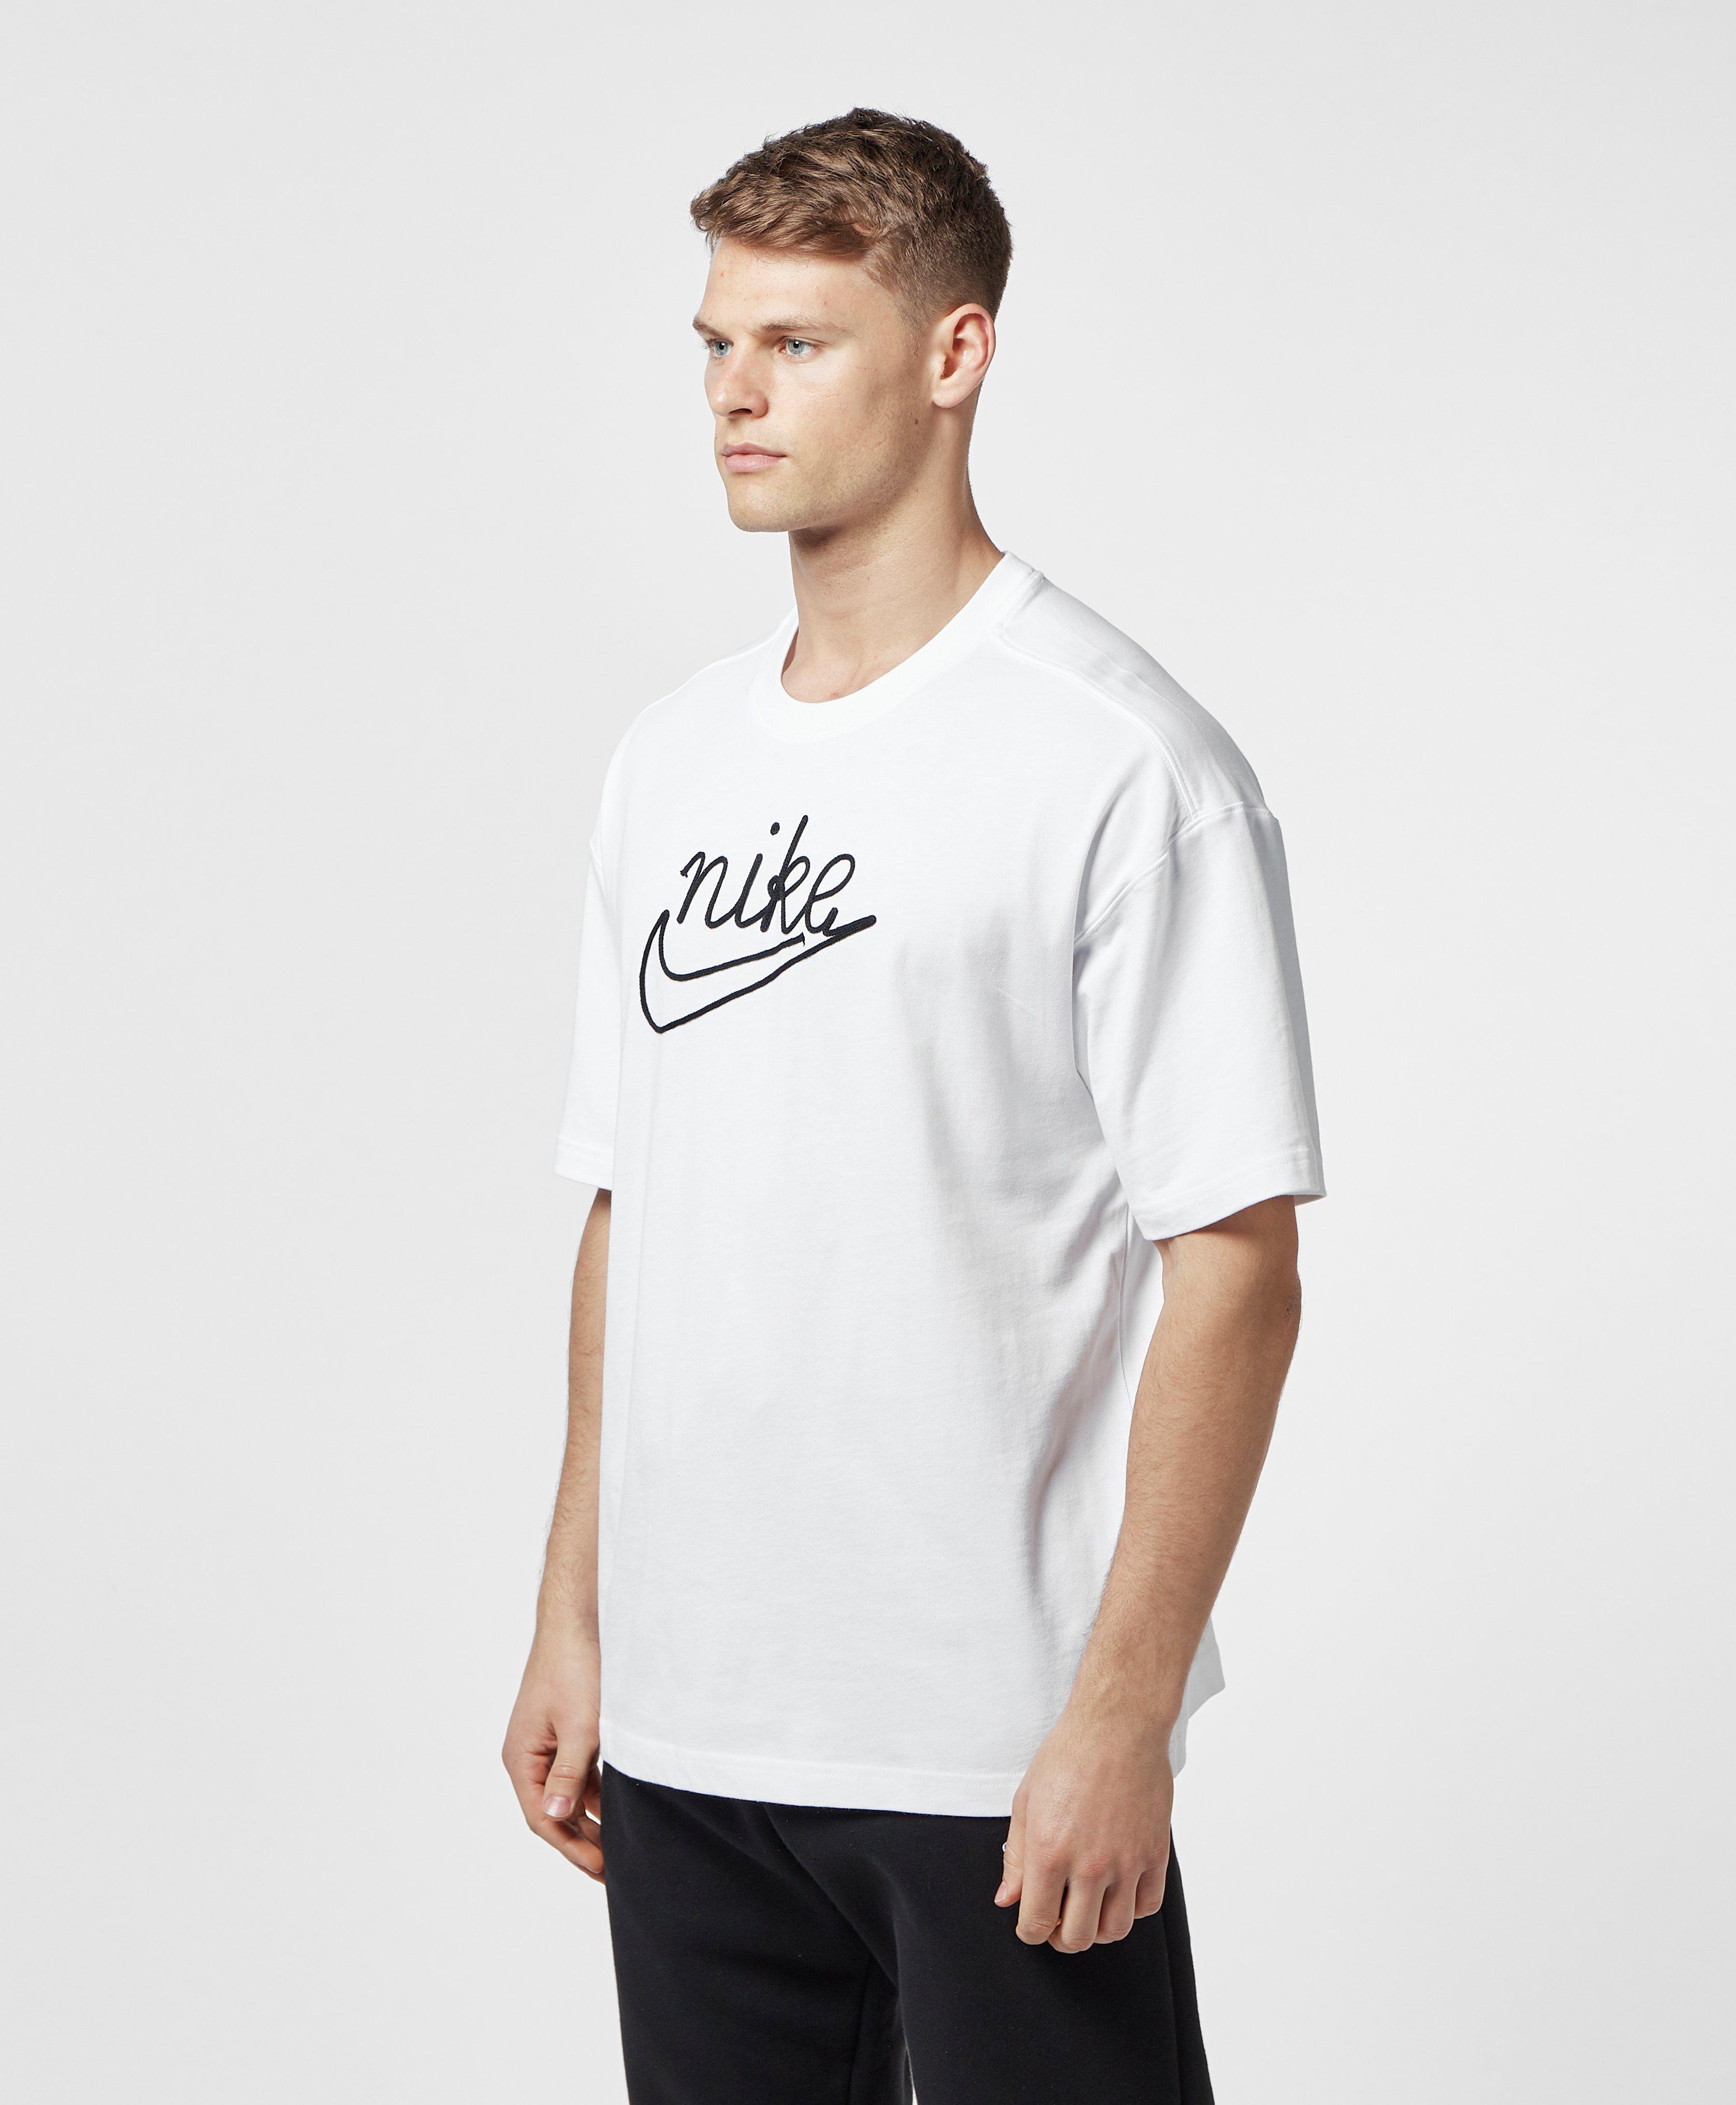 Nike Cotton Outline Short Sleeve T-shirt in White for Men - Lyst